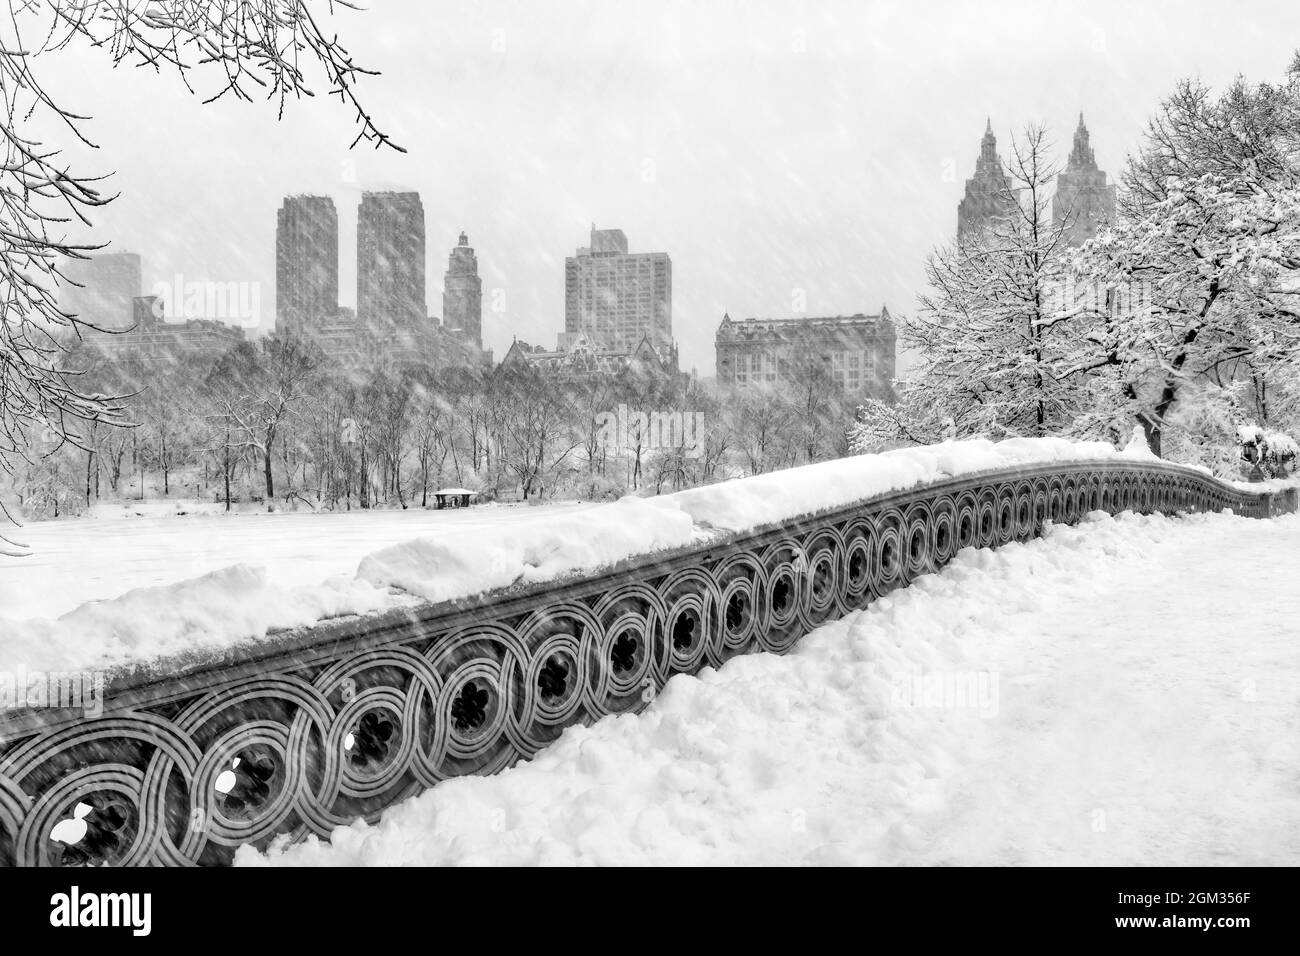 Bow Bridge à Central Park, les San Remo Towers et d'autres gratte-ciel qui composent l'horizon du centre de Manhattan pendant une tempête de neige. Banque D'Images